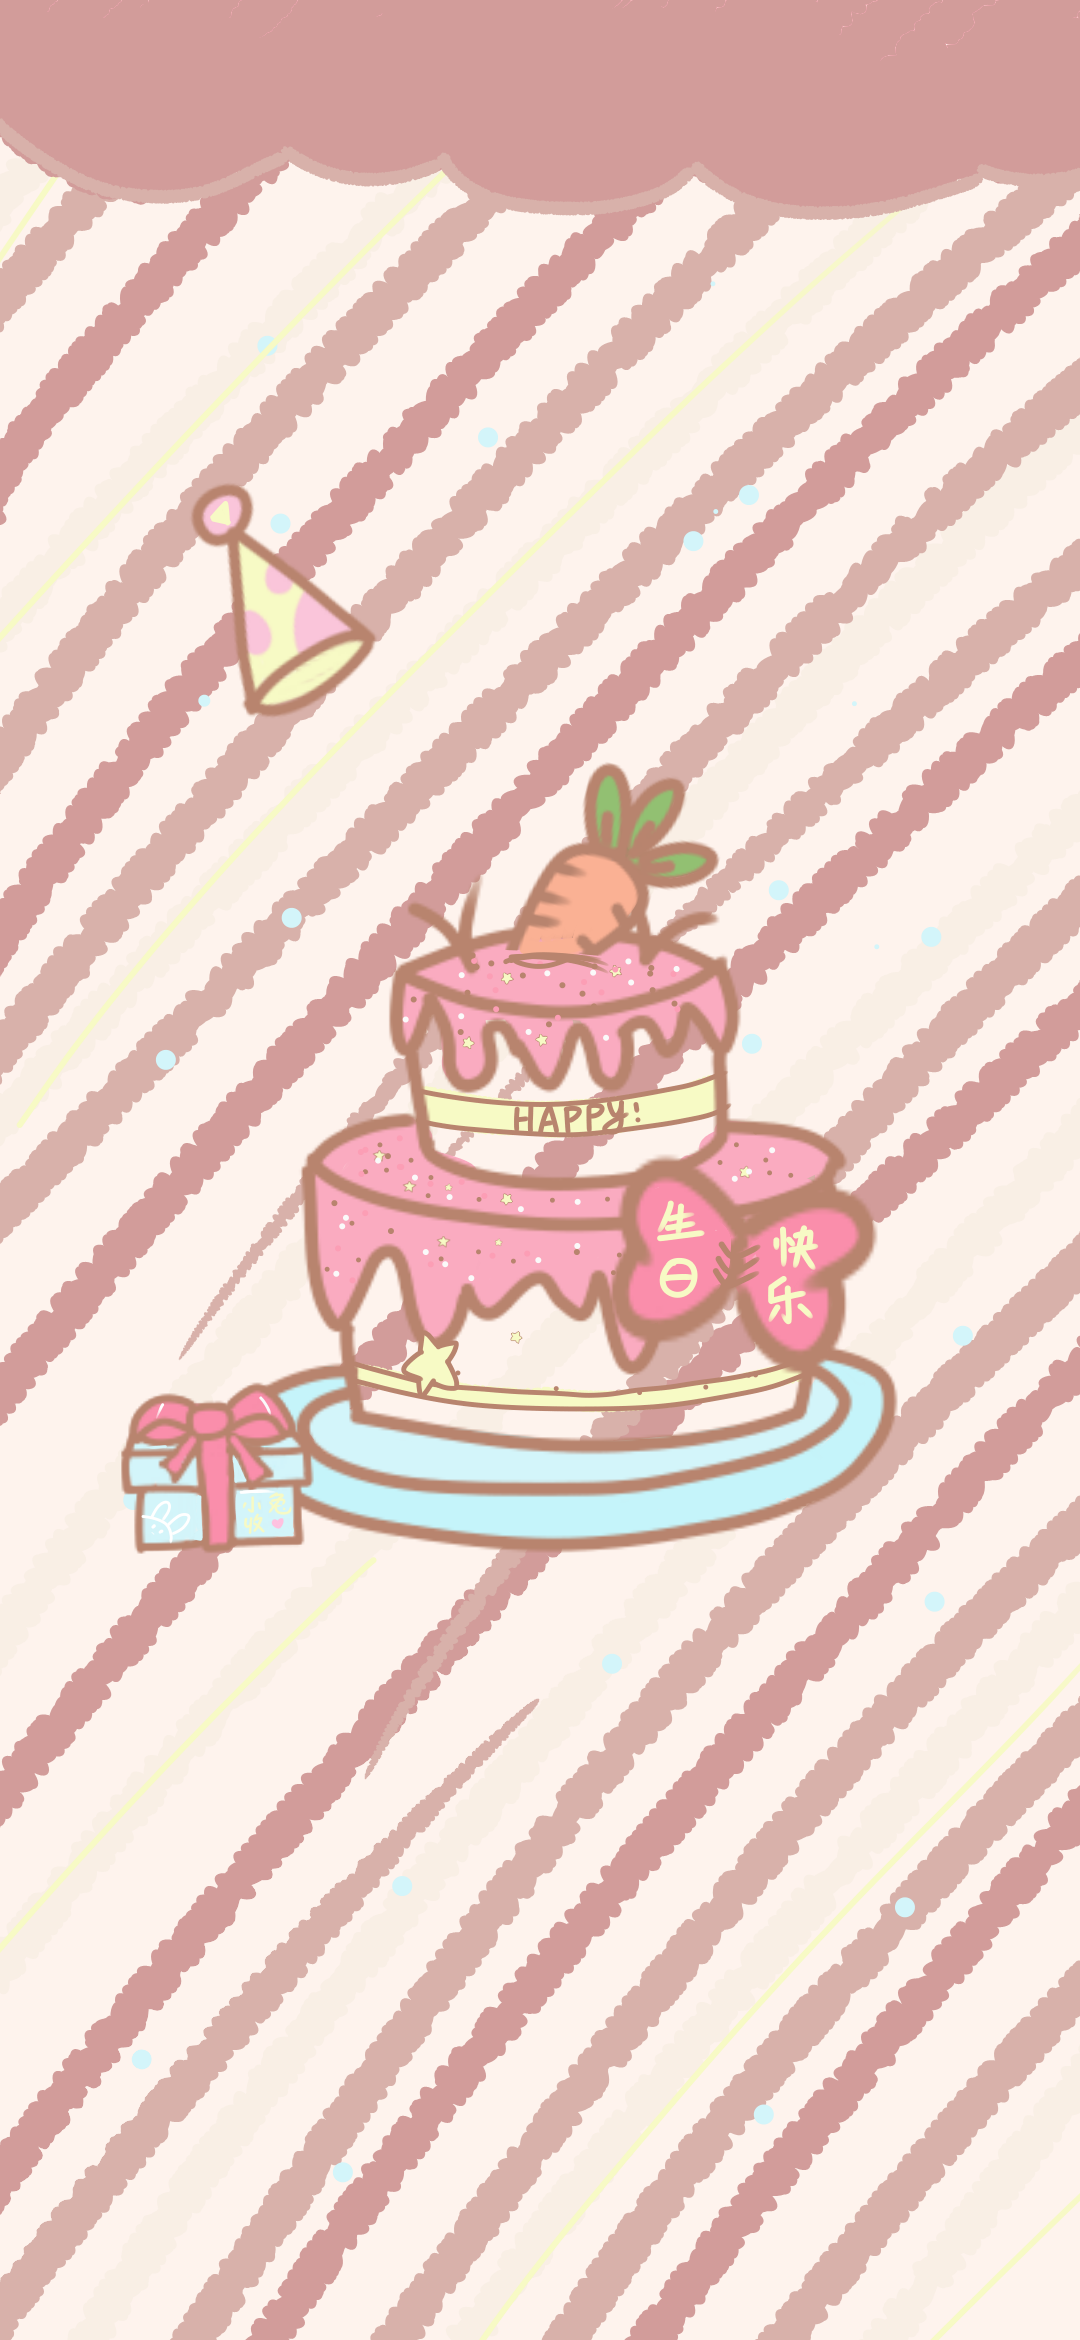 可爱壁纸生日快乐,可可爱爱,蛋糕了